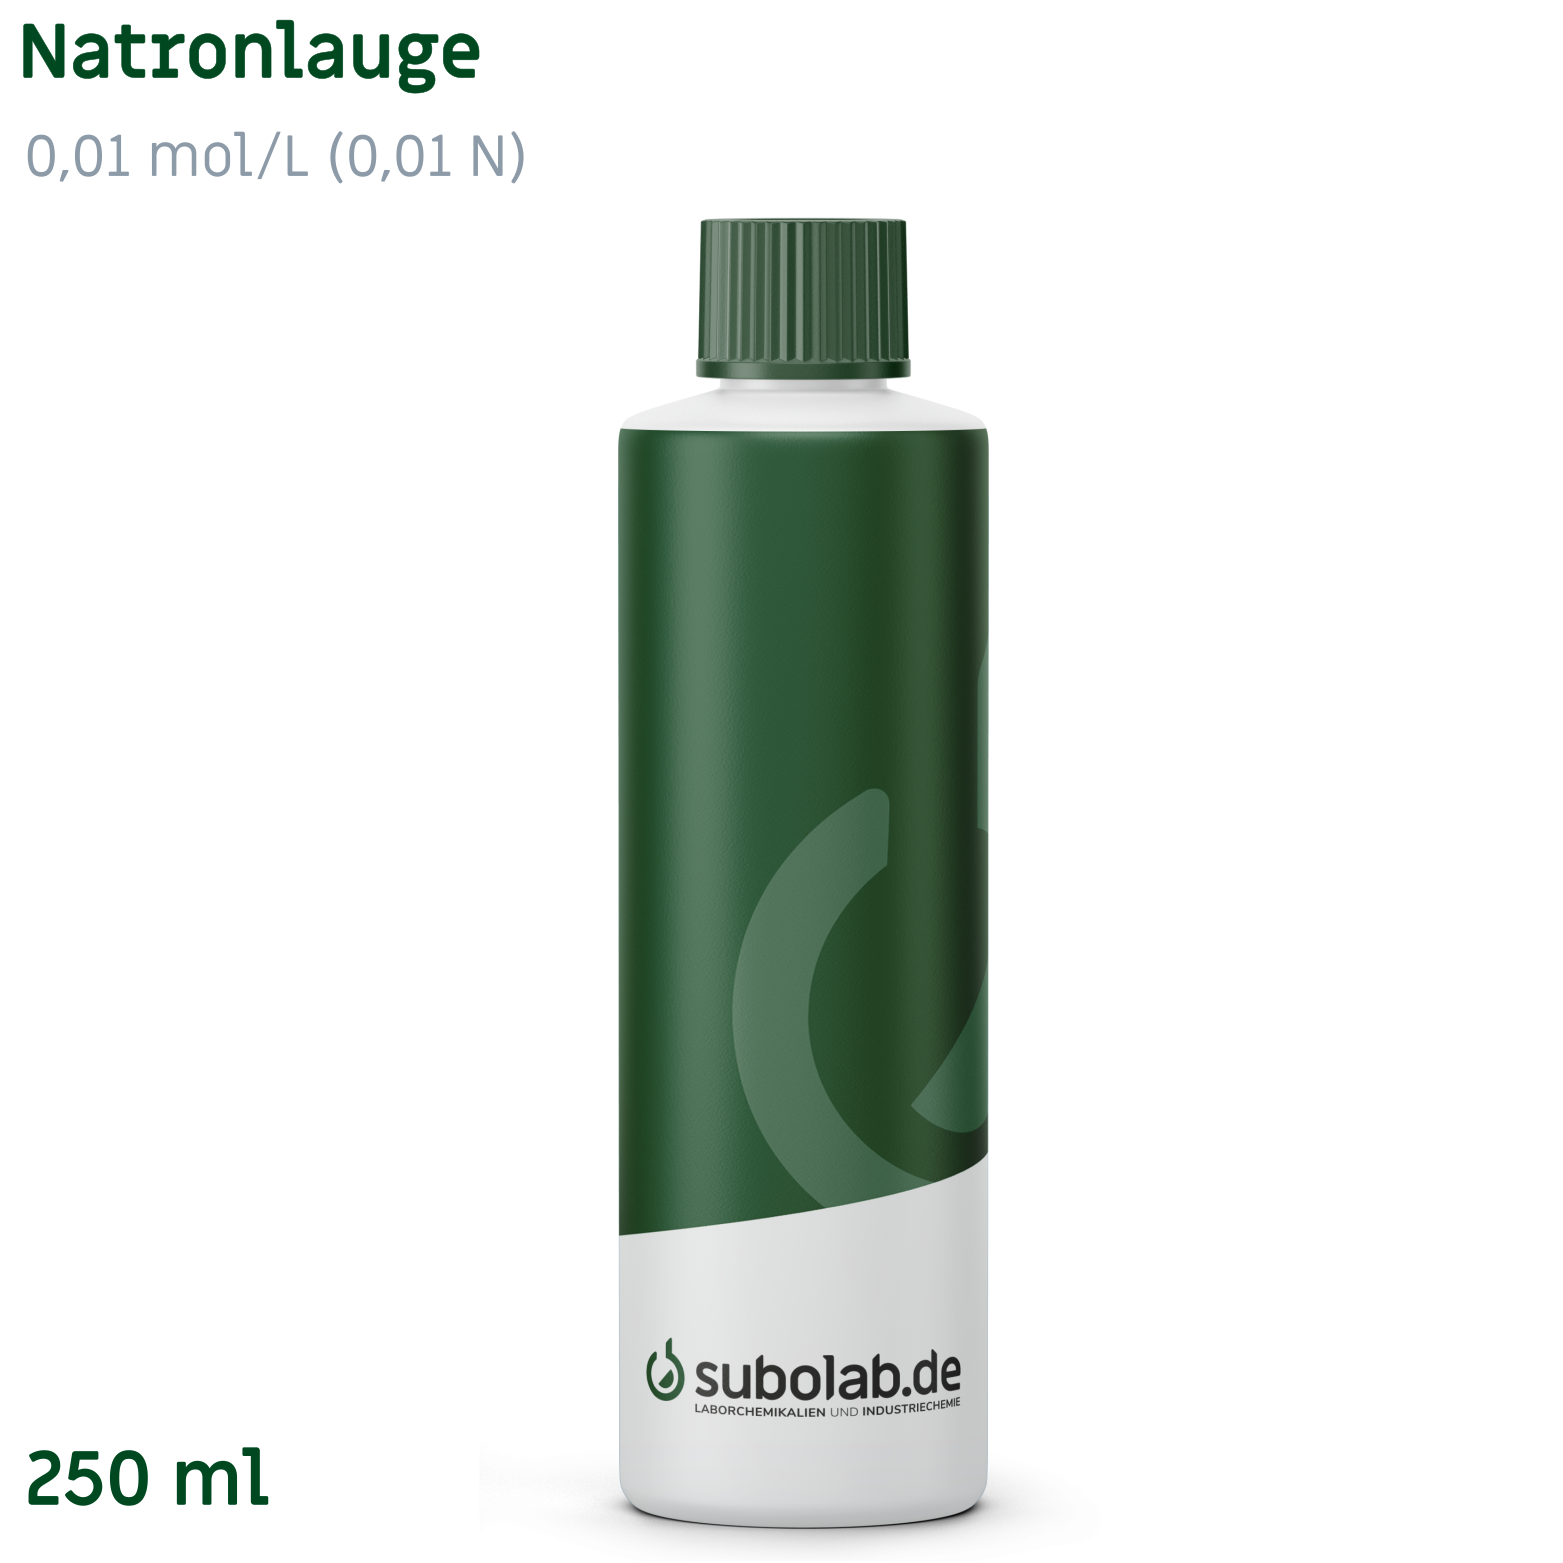 Bild von Natronlauge 0,01 mol/L (0,01 N) (250 ml)